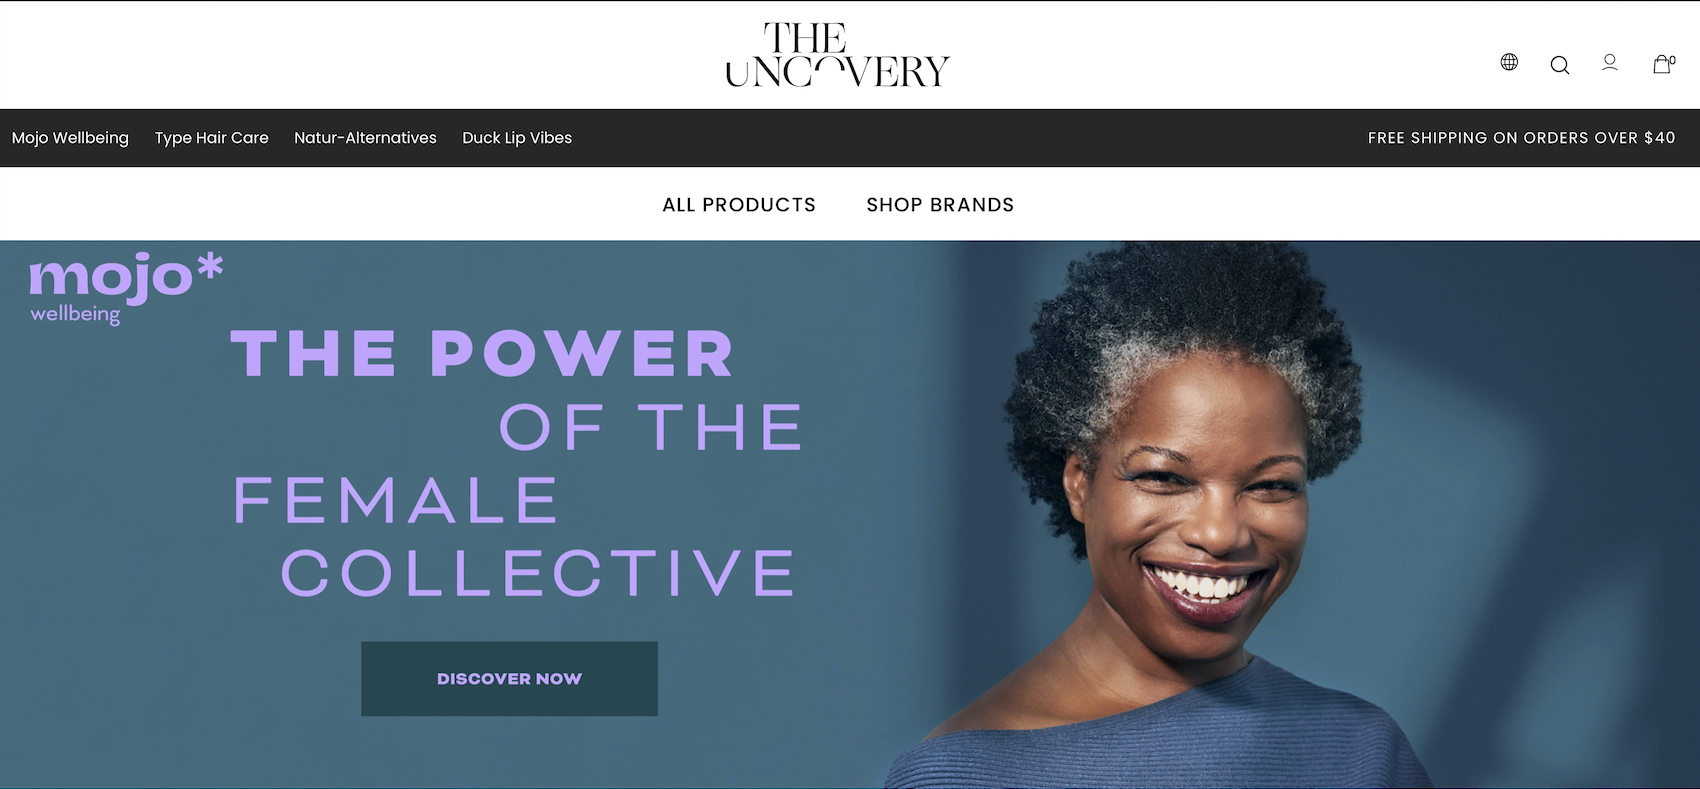 联合利华孵化器 The UnCovery 如何借力意见领袖打造新一代品牌？